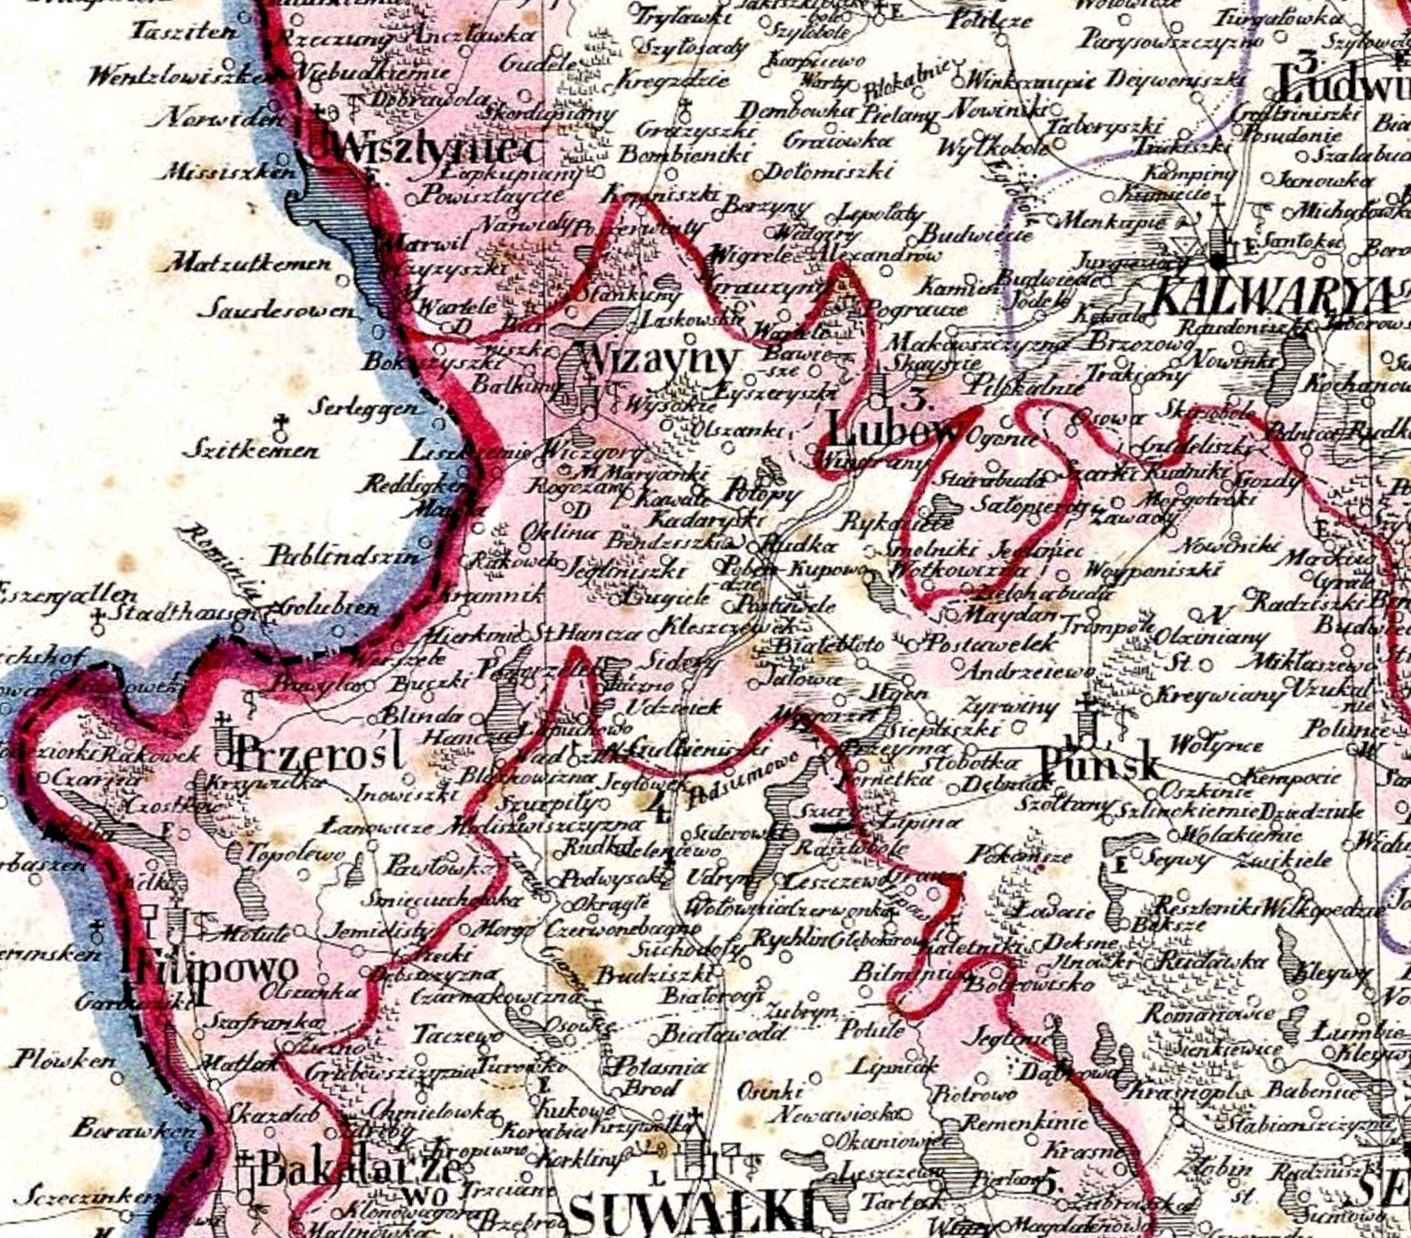 1826 map detail